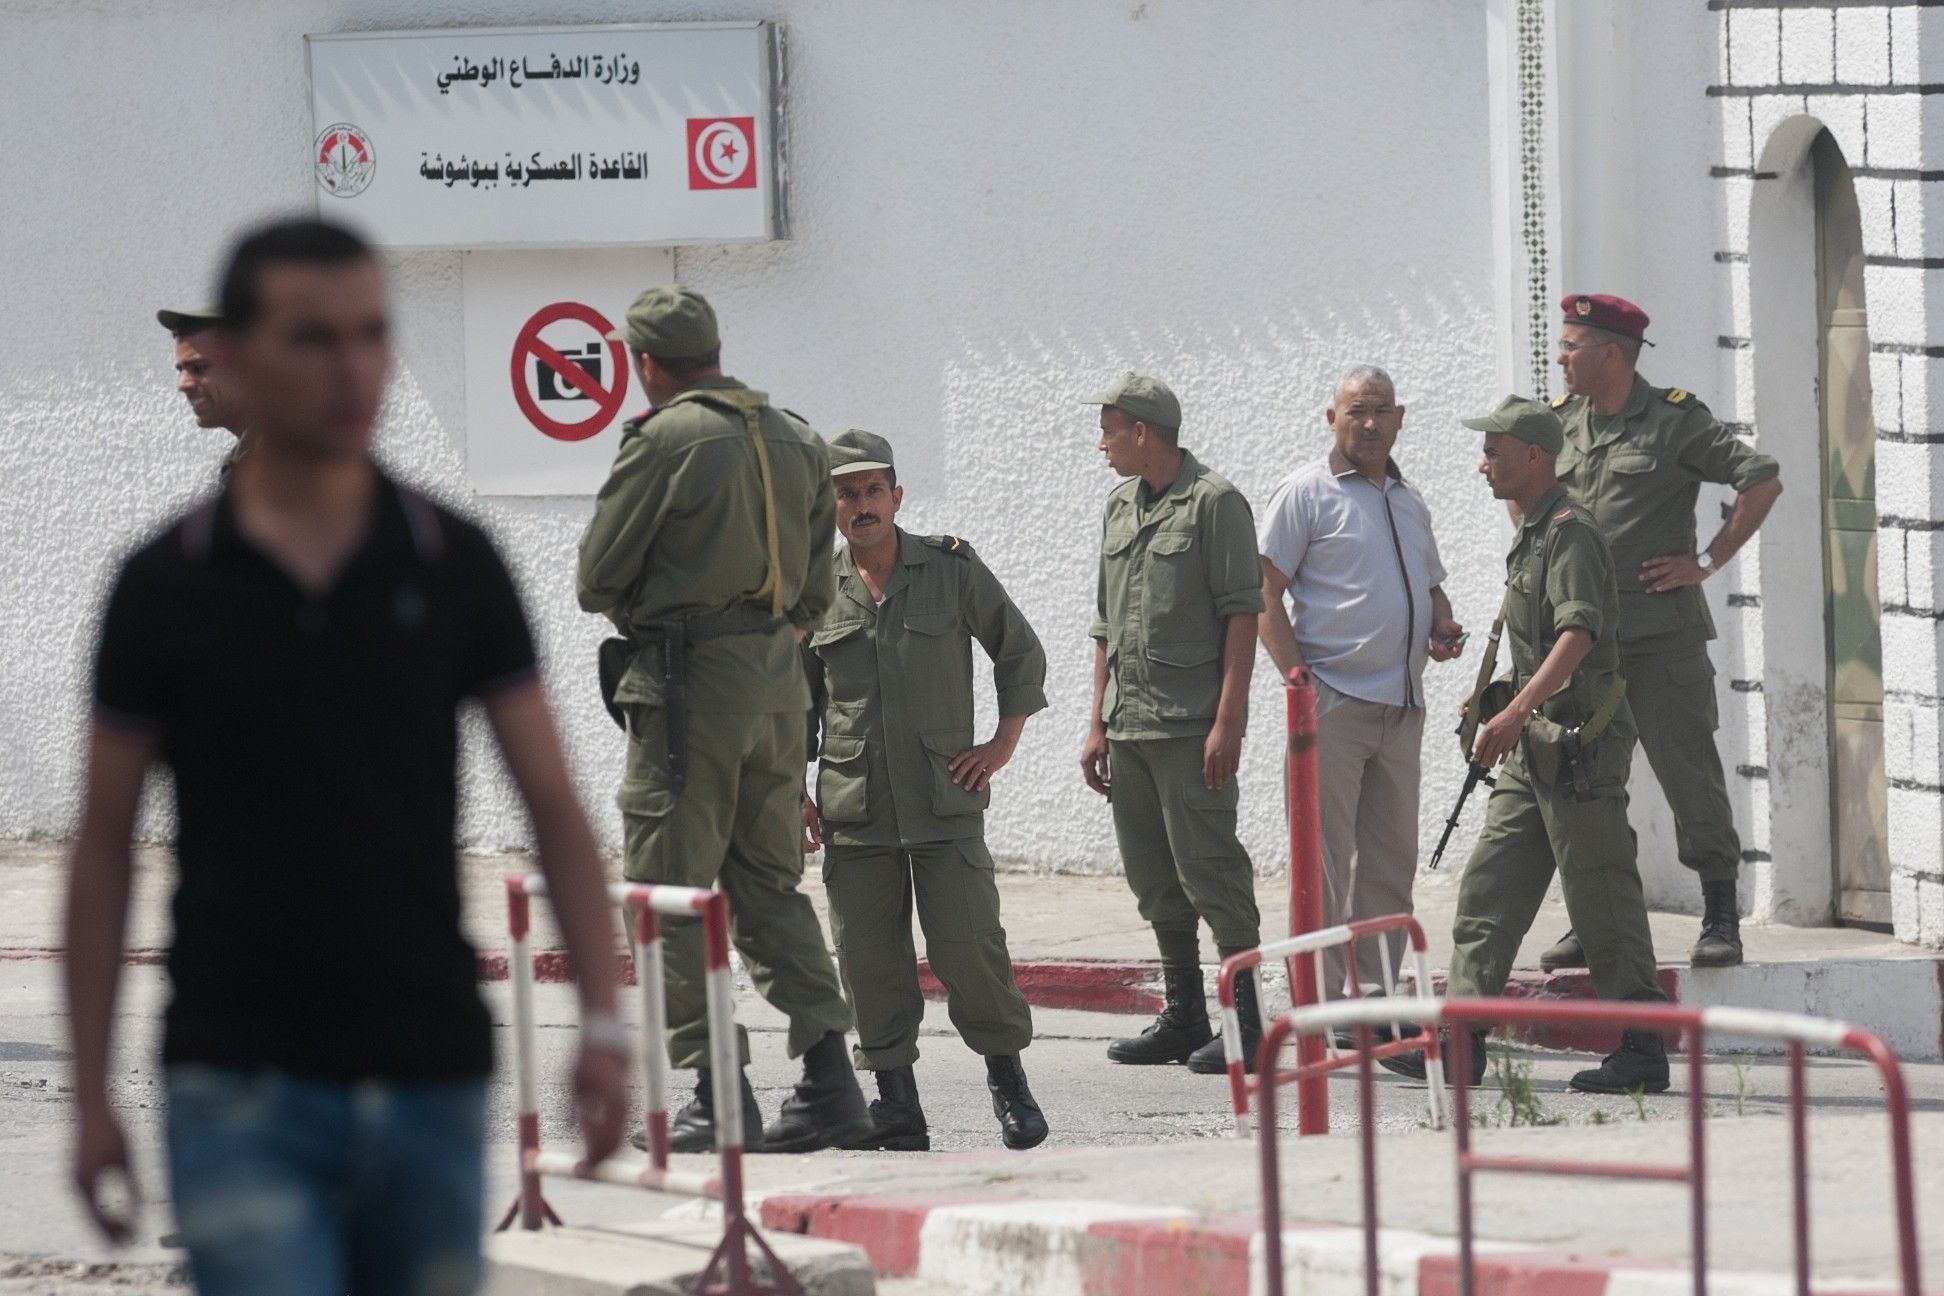 القاعدة العسكرية ببوشوشة من أكبر الحاميات المتمركزة بغرب العاصمة التونسية